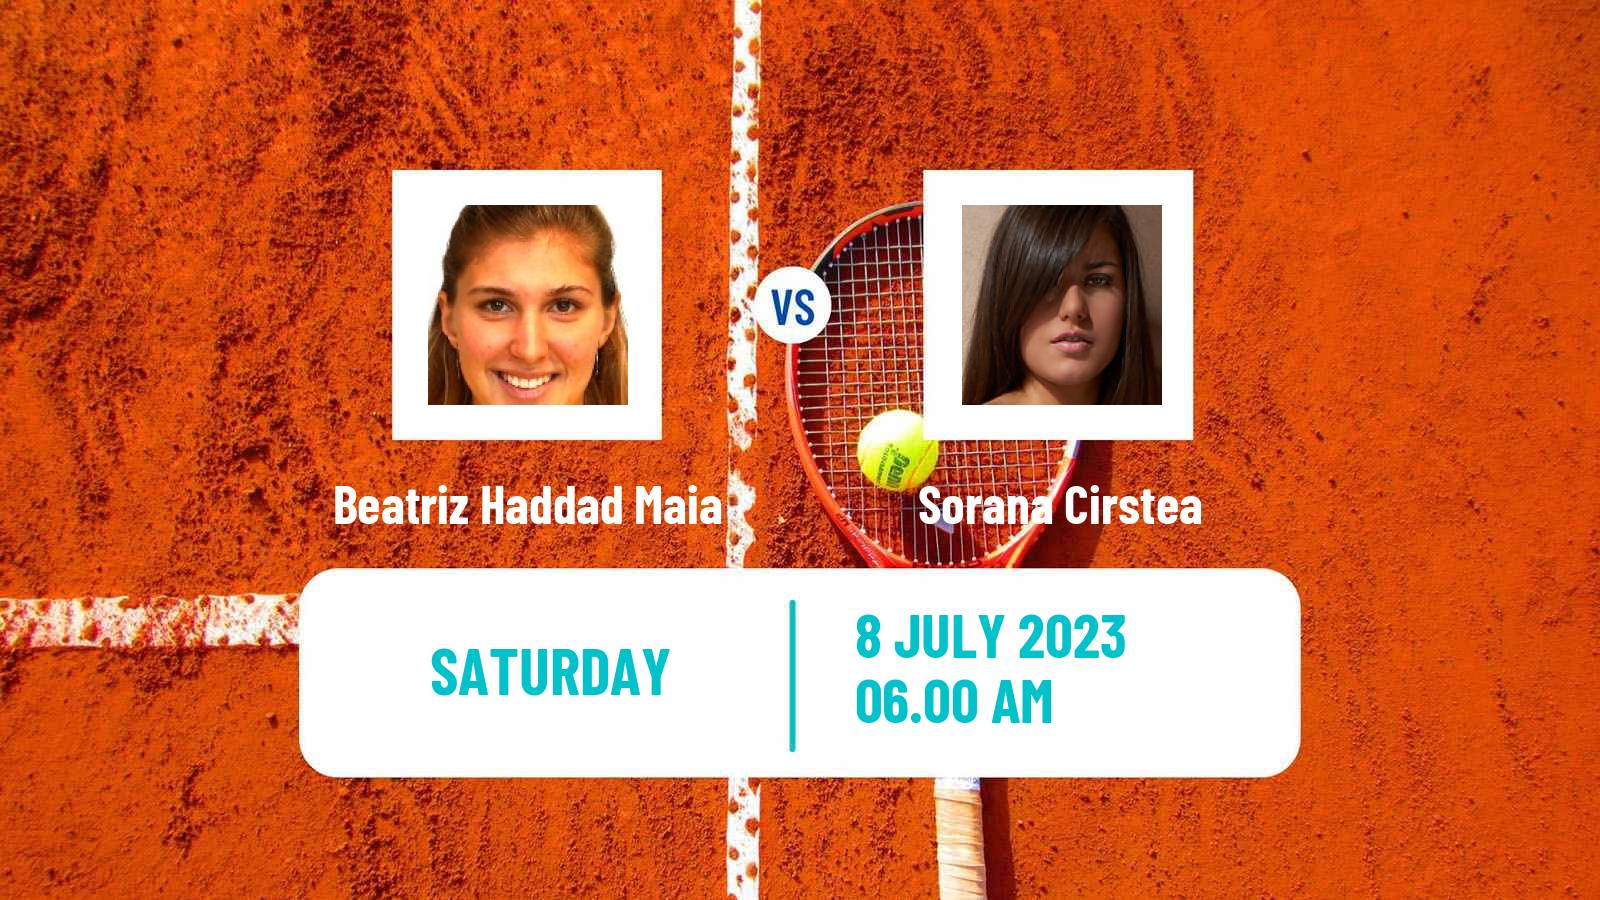 Tennis WTA Wimbledon Beatriz Haddad Maia - Sorana Cirstea